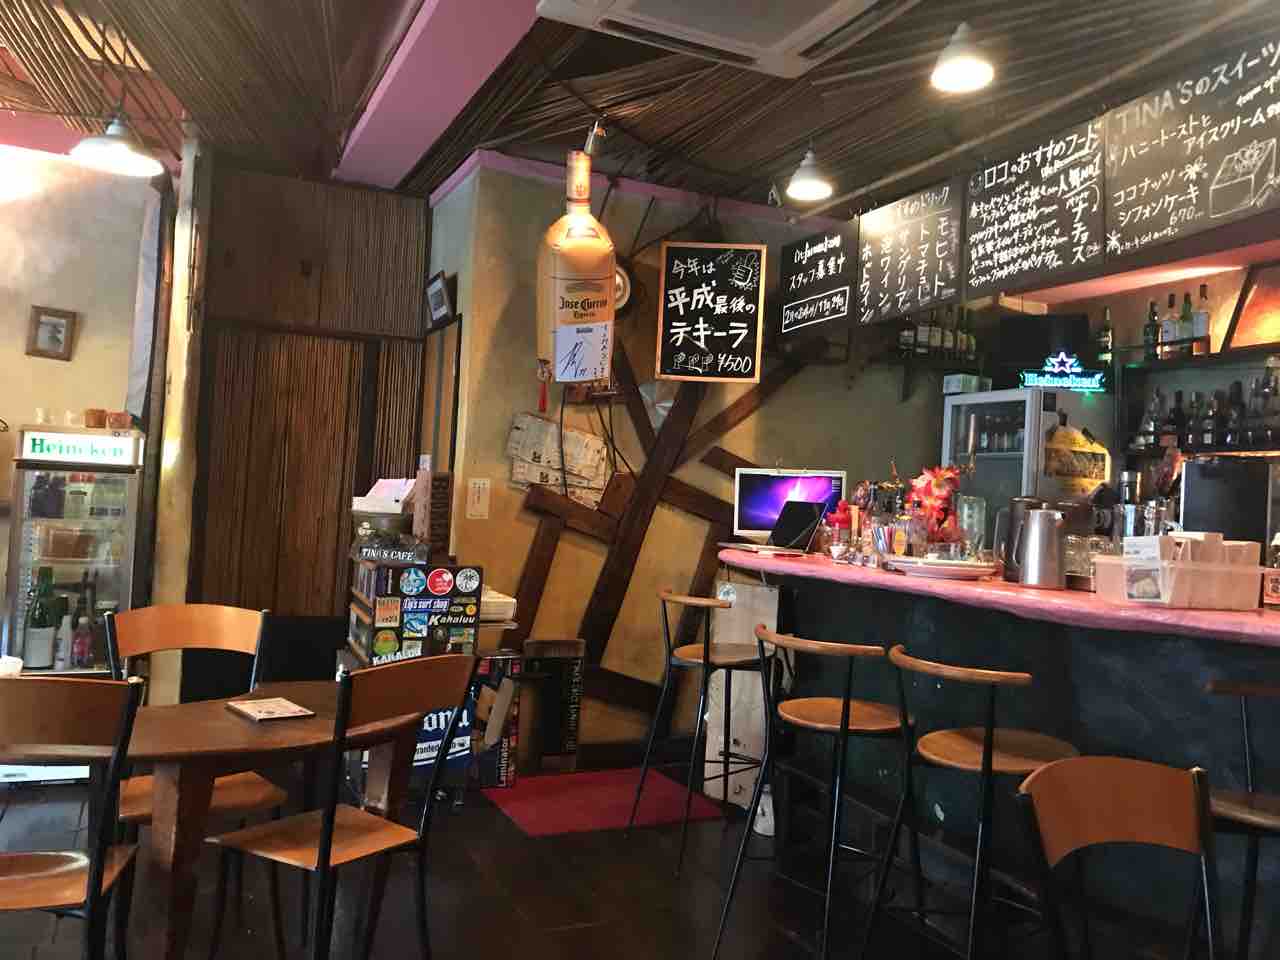 Tina S Cafe 江坂 ロコモコ カレー ハワイアンカフェで食べられる個性的なワンプレート ティナズカフェ 大阪 福岡カレーステーション